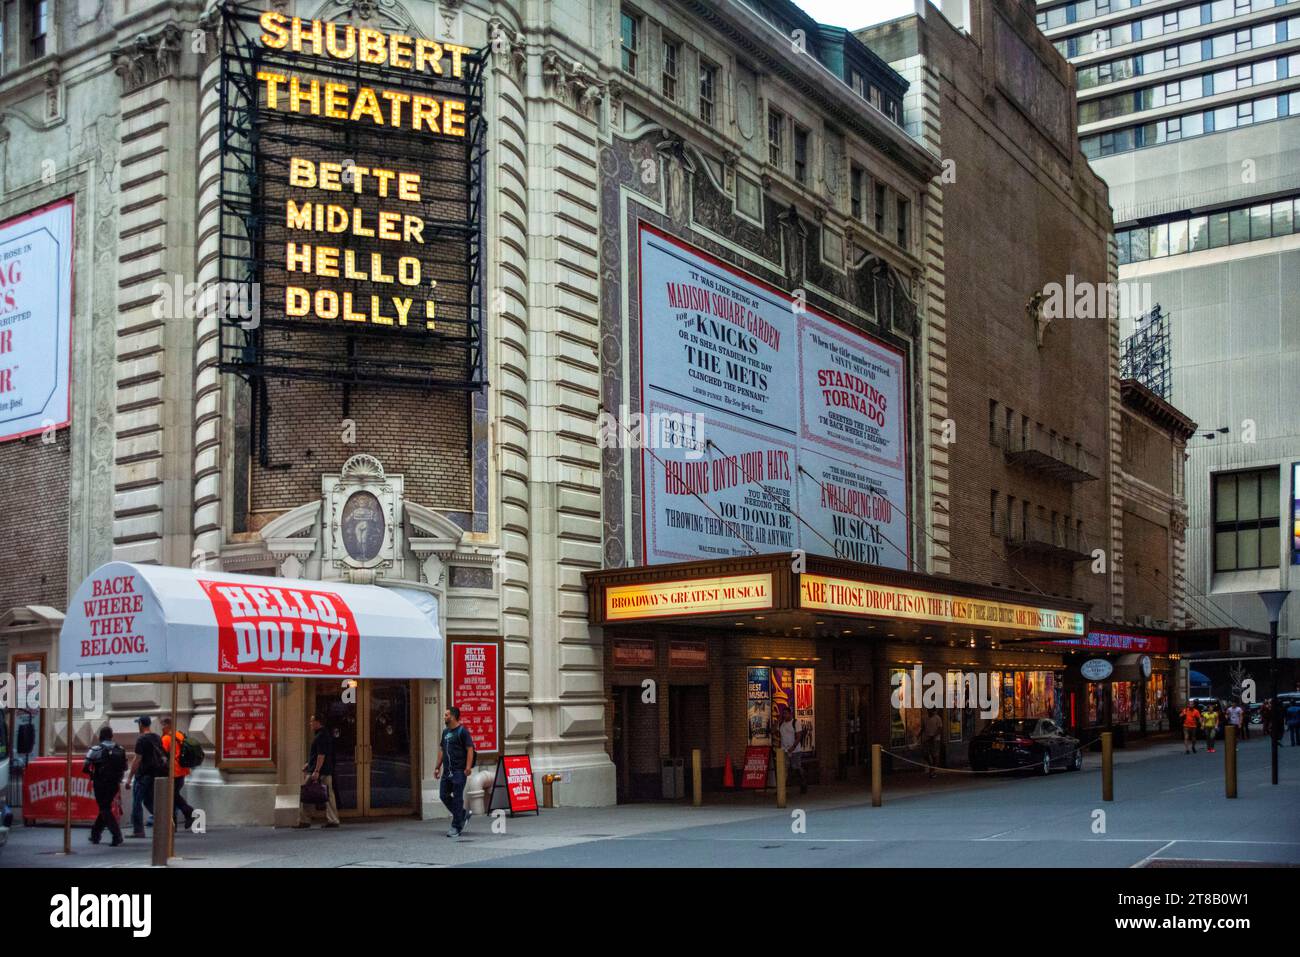 Le Shubert Theatre est un théâtre de Broadway dans le centre de Manhattan New York City New York États-Unis. Théâtre Shubert Alley dans le quartier des théâtres. 225 Ouest 44 Banque D'Images